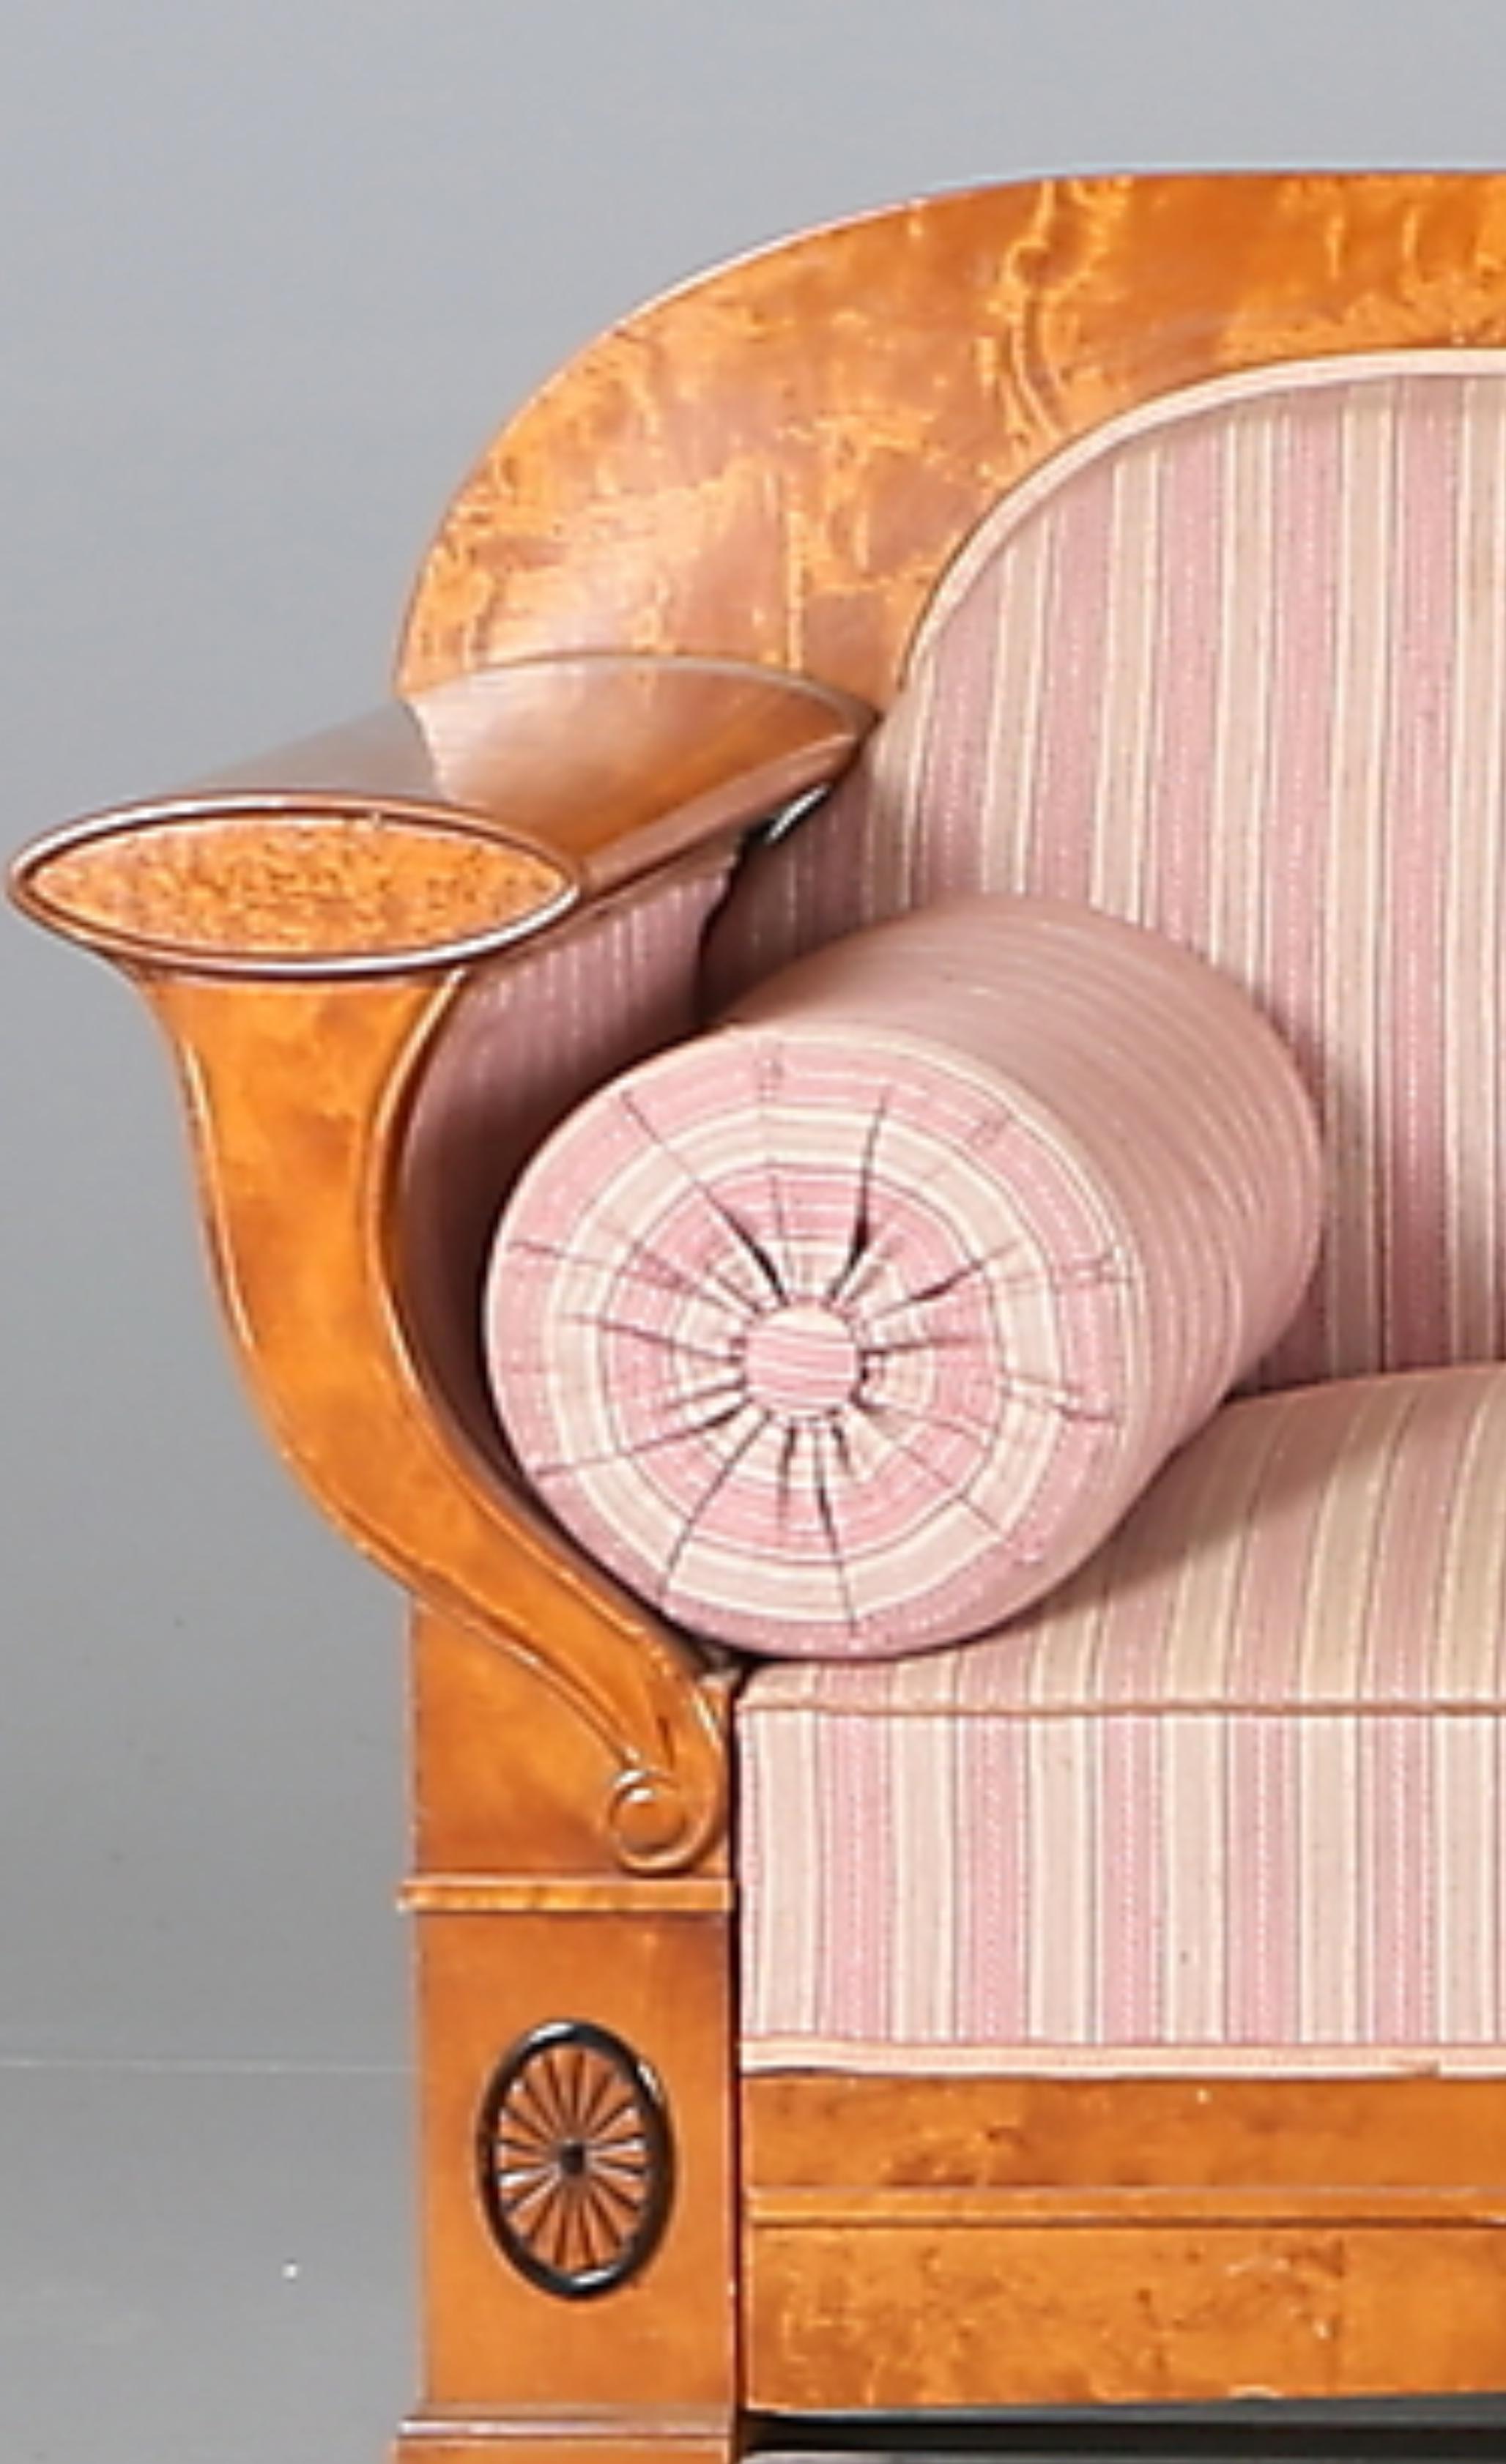 Schwedisches Biedermeier-Sofa mit 4-5 Sitzplätzen in klassischer, honigfarbener Lackierung mit geschwungenen Armlehnen und dekorativen Enden und zentralen Motiven im Ormolu-Stil aus hochwertigem, gestepptem Birkenfurnier.

Ein gutes Beispiel für